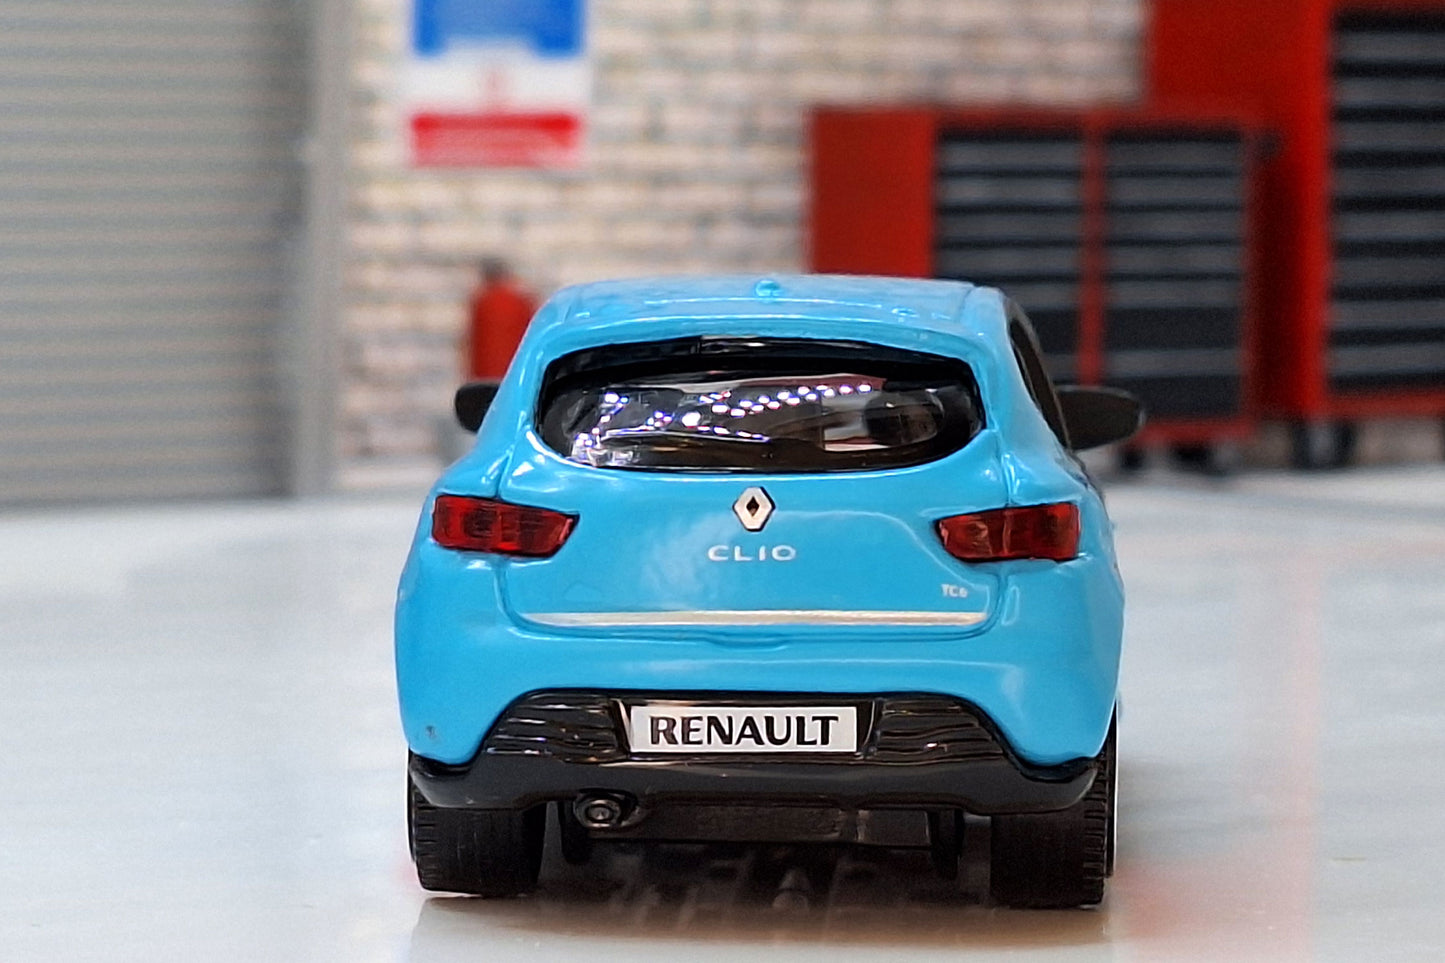 Renault Clio 2013-Blue 1:43 Scale Bburago